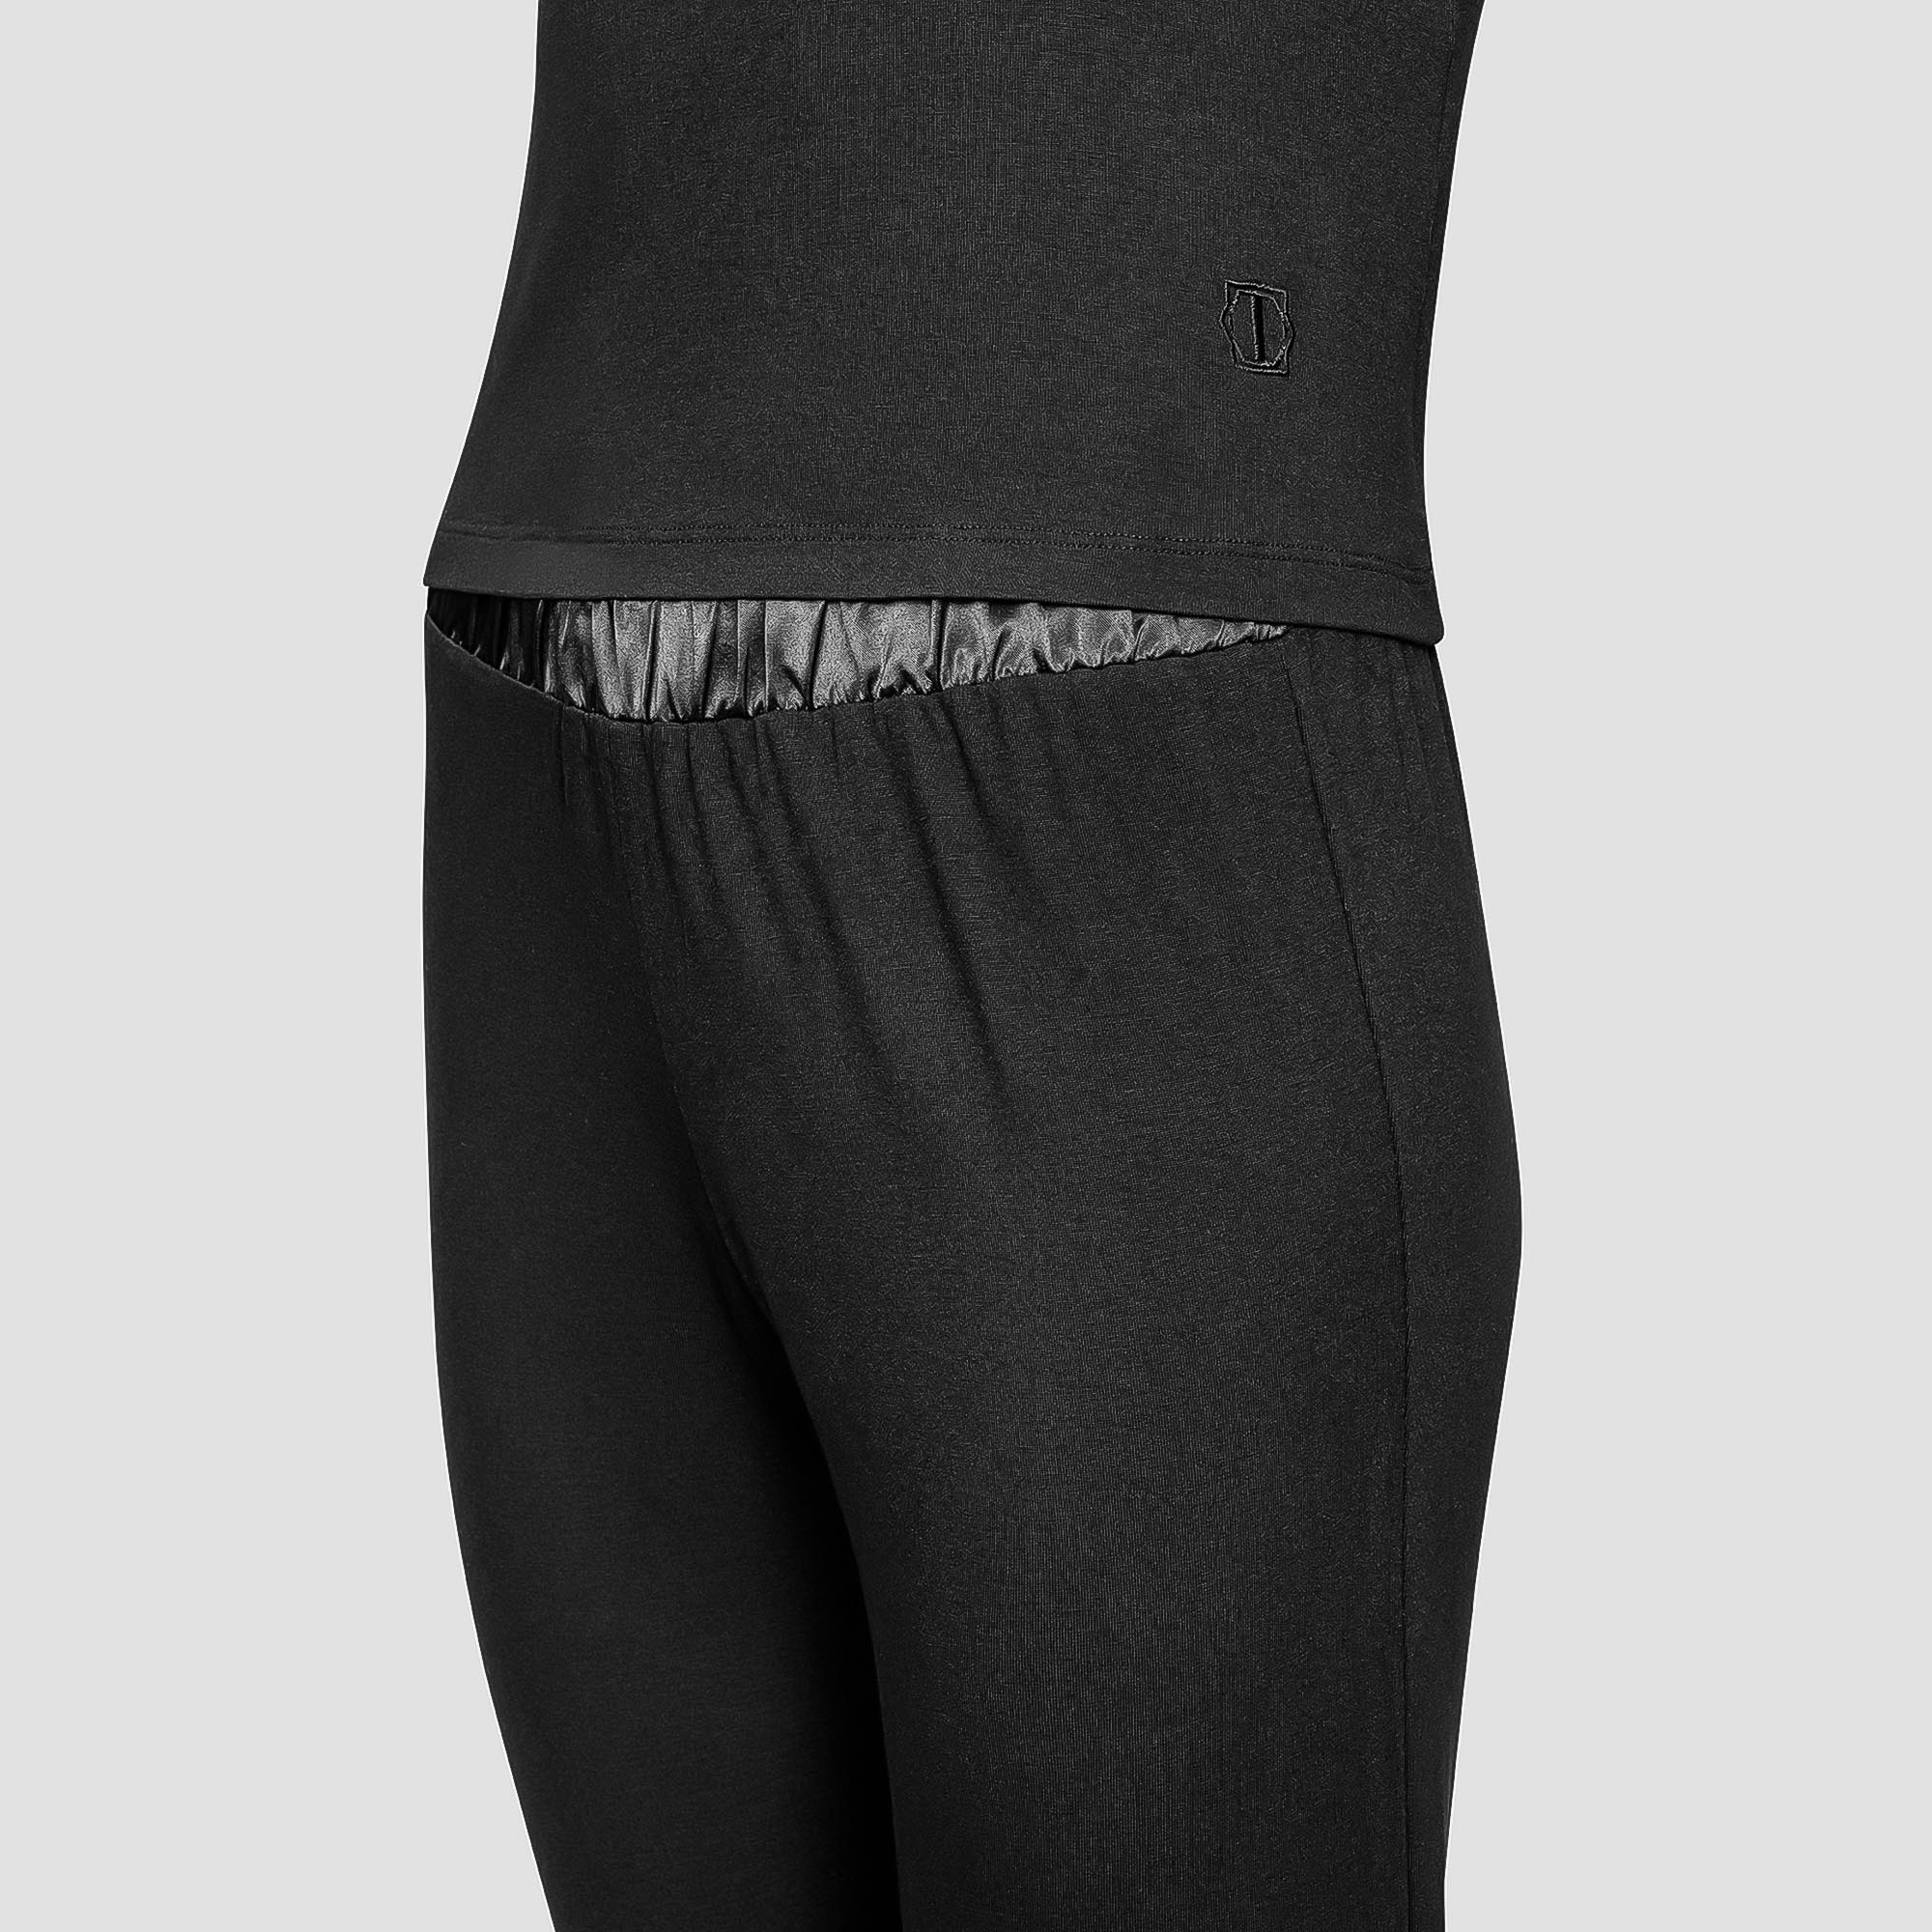 Пижама Togas Ингелла черная женская XXL(52) 2 предмета, размер XXL(52) - фото 2